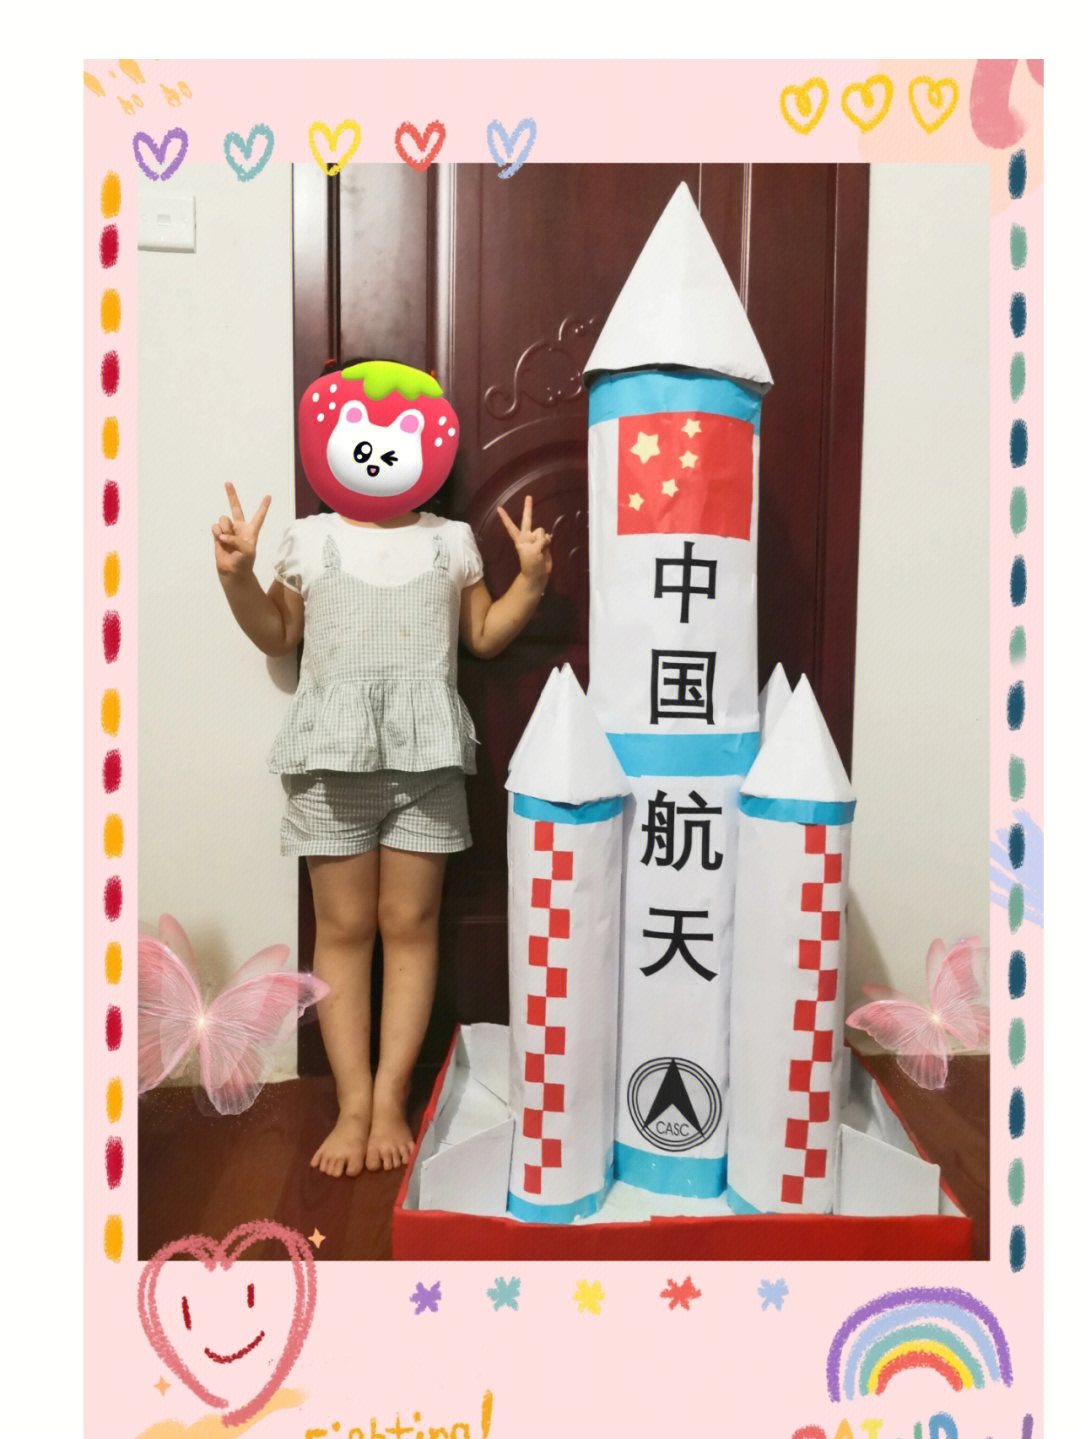 为迎接国庆,幼儿园班里邀请3个小朋友制作航天火箭,放在幼儿园大厅